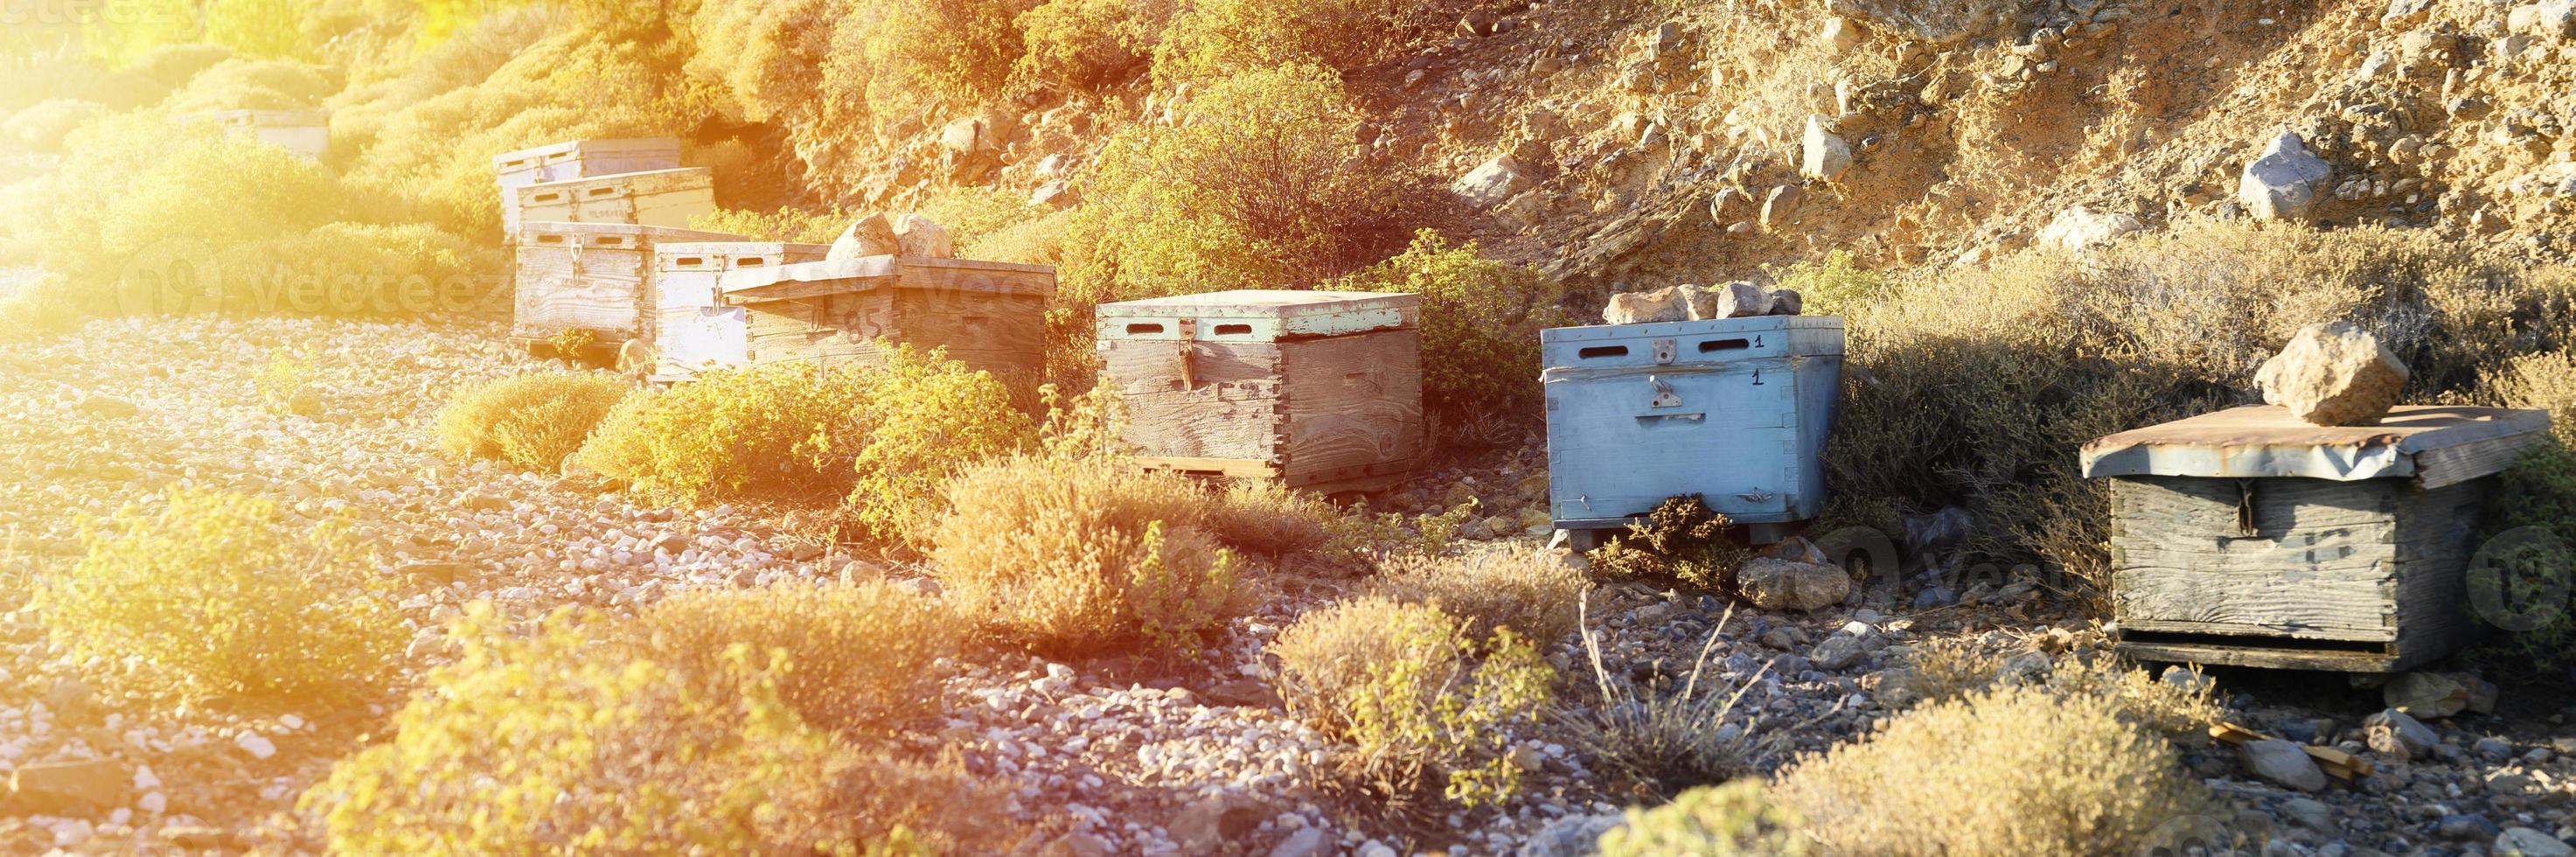 Colmenas de abejas en una zona montañosa al atardecer foto